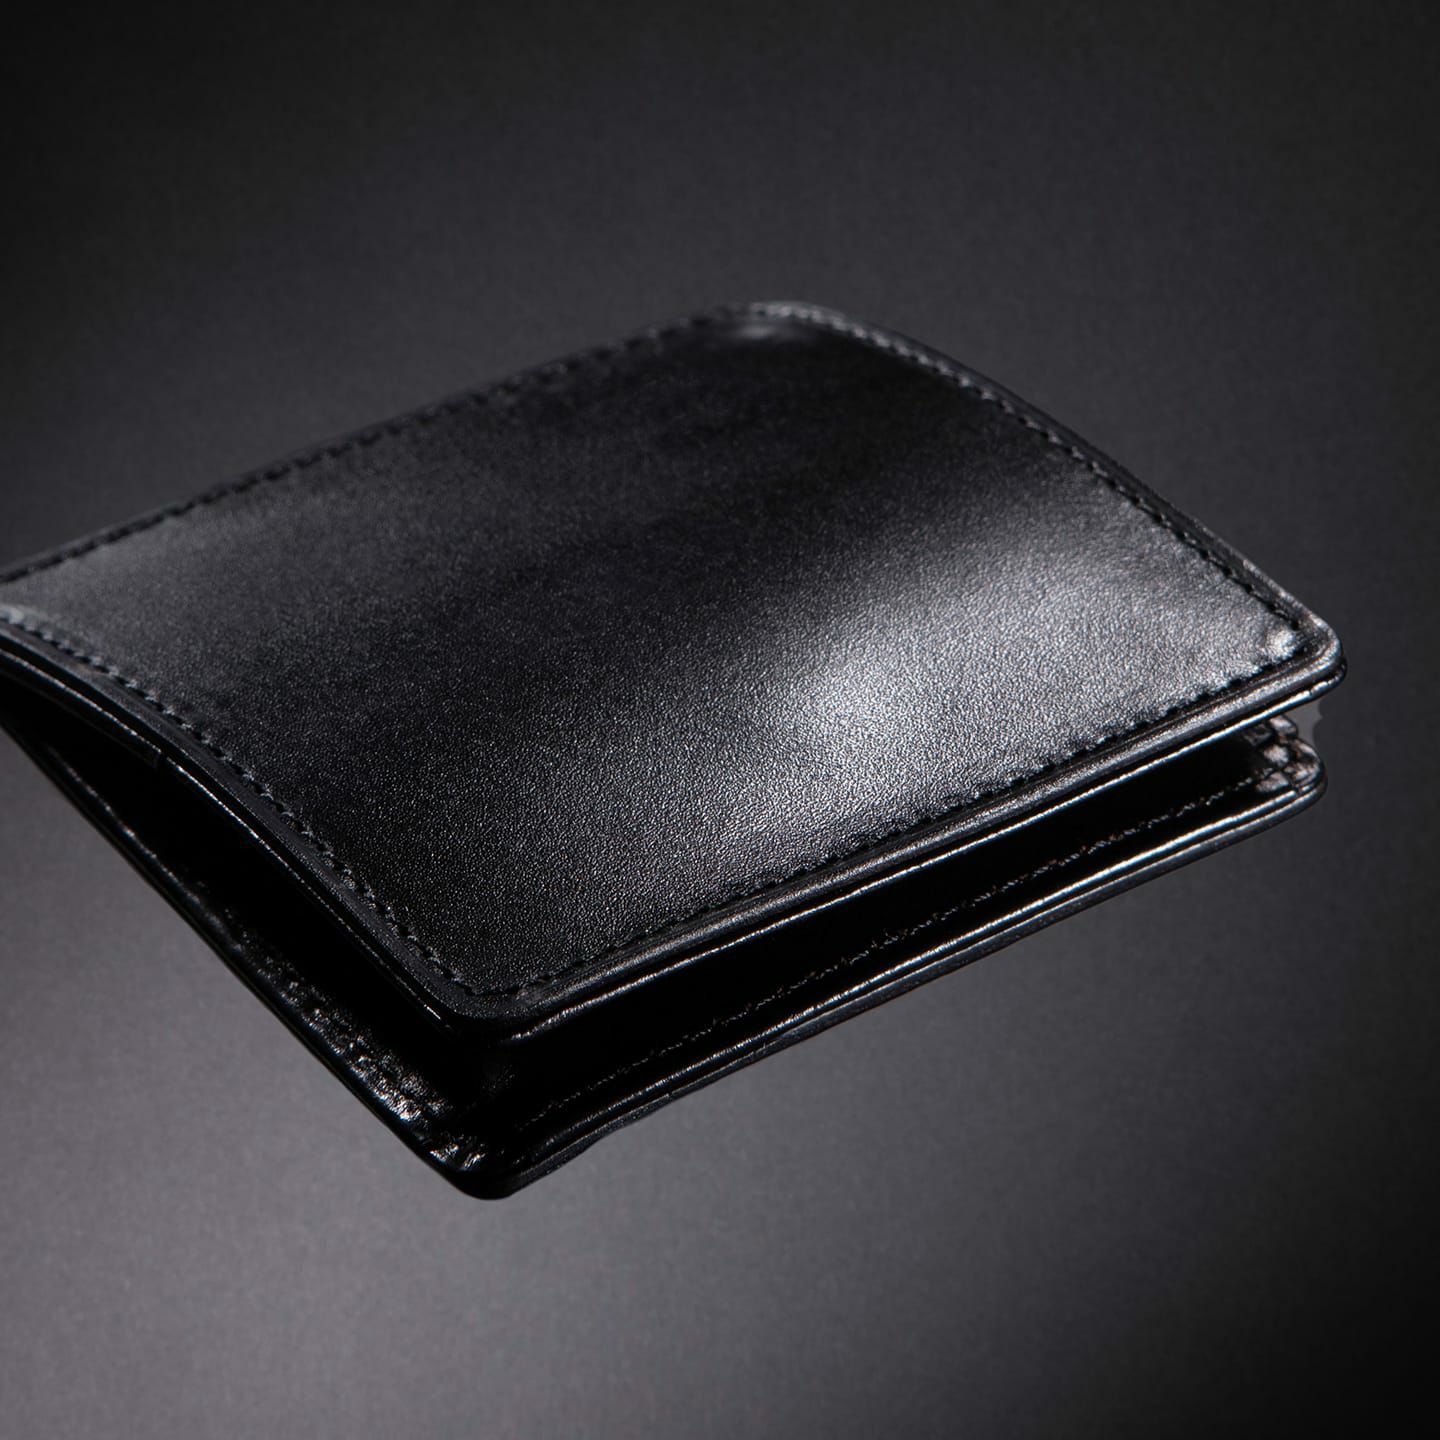 ホーウィン シェルコードバン コインケース | 大人の財布･ コインケース など拘りの日本製ブランドなら Mens Leather Store